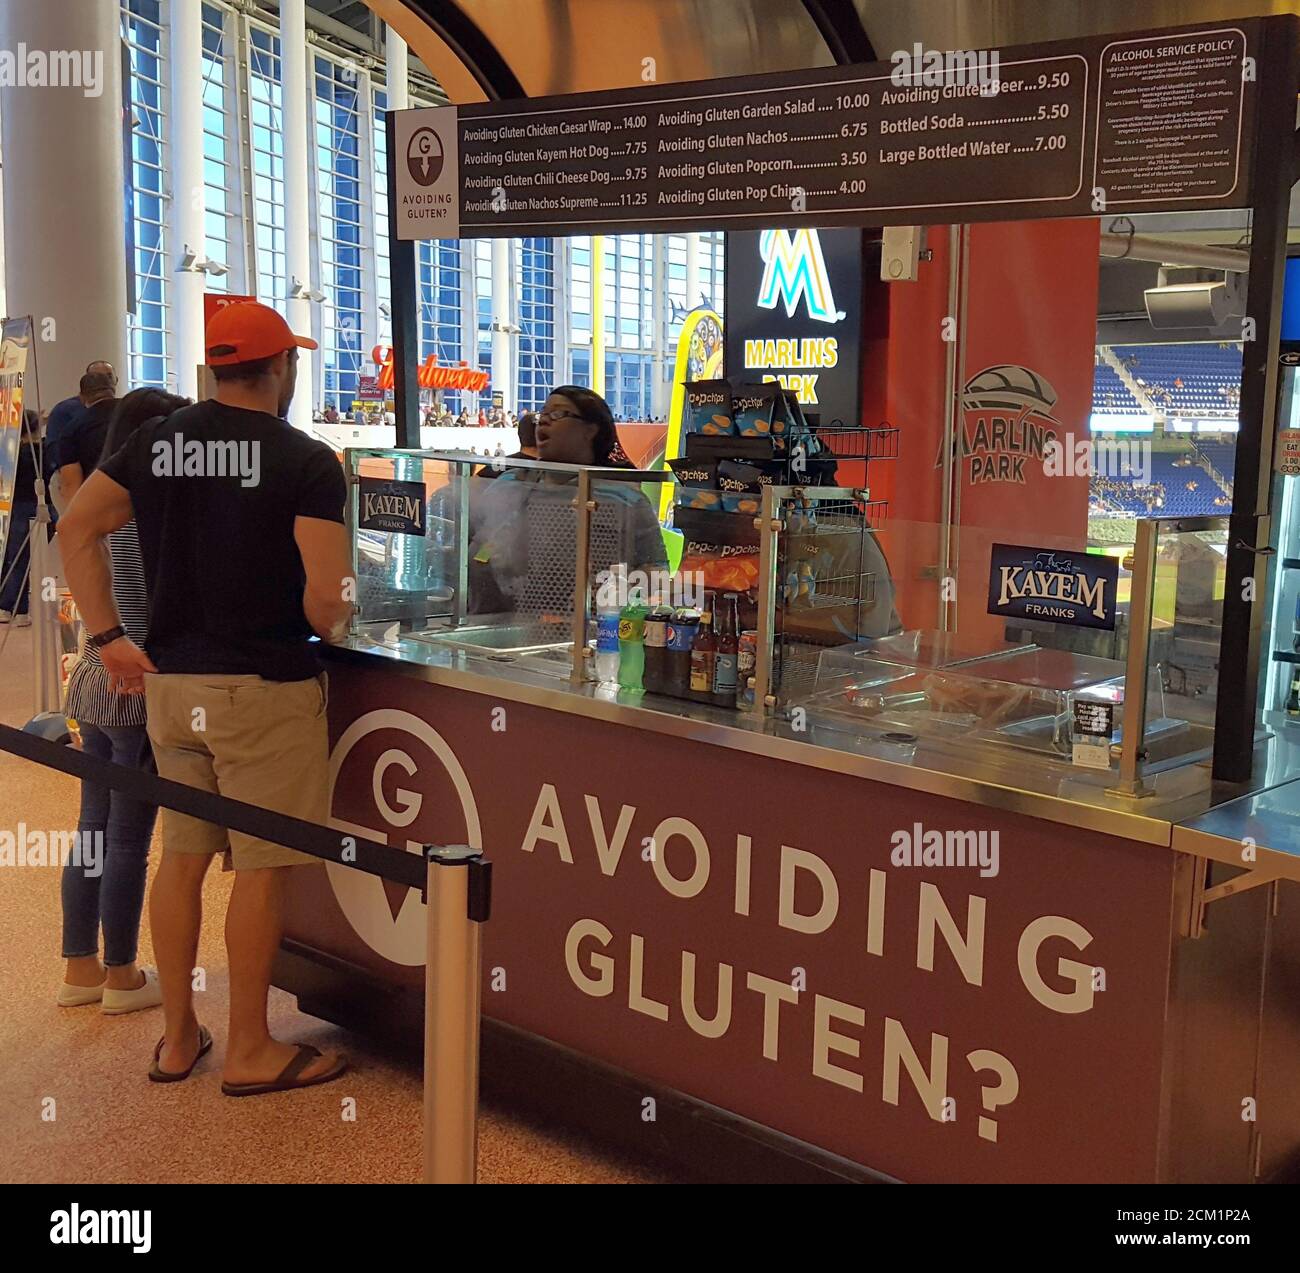 Vermeiden von Gluten?, die glutenfreie Lebensmittel stehen im Marlins Park Baseball, Miami, Florida, USA Stockfoto